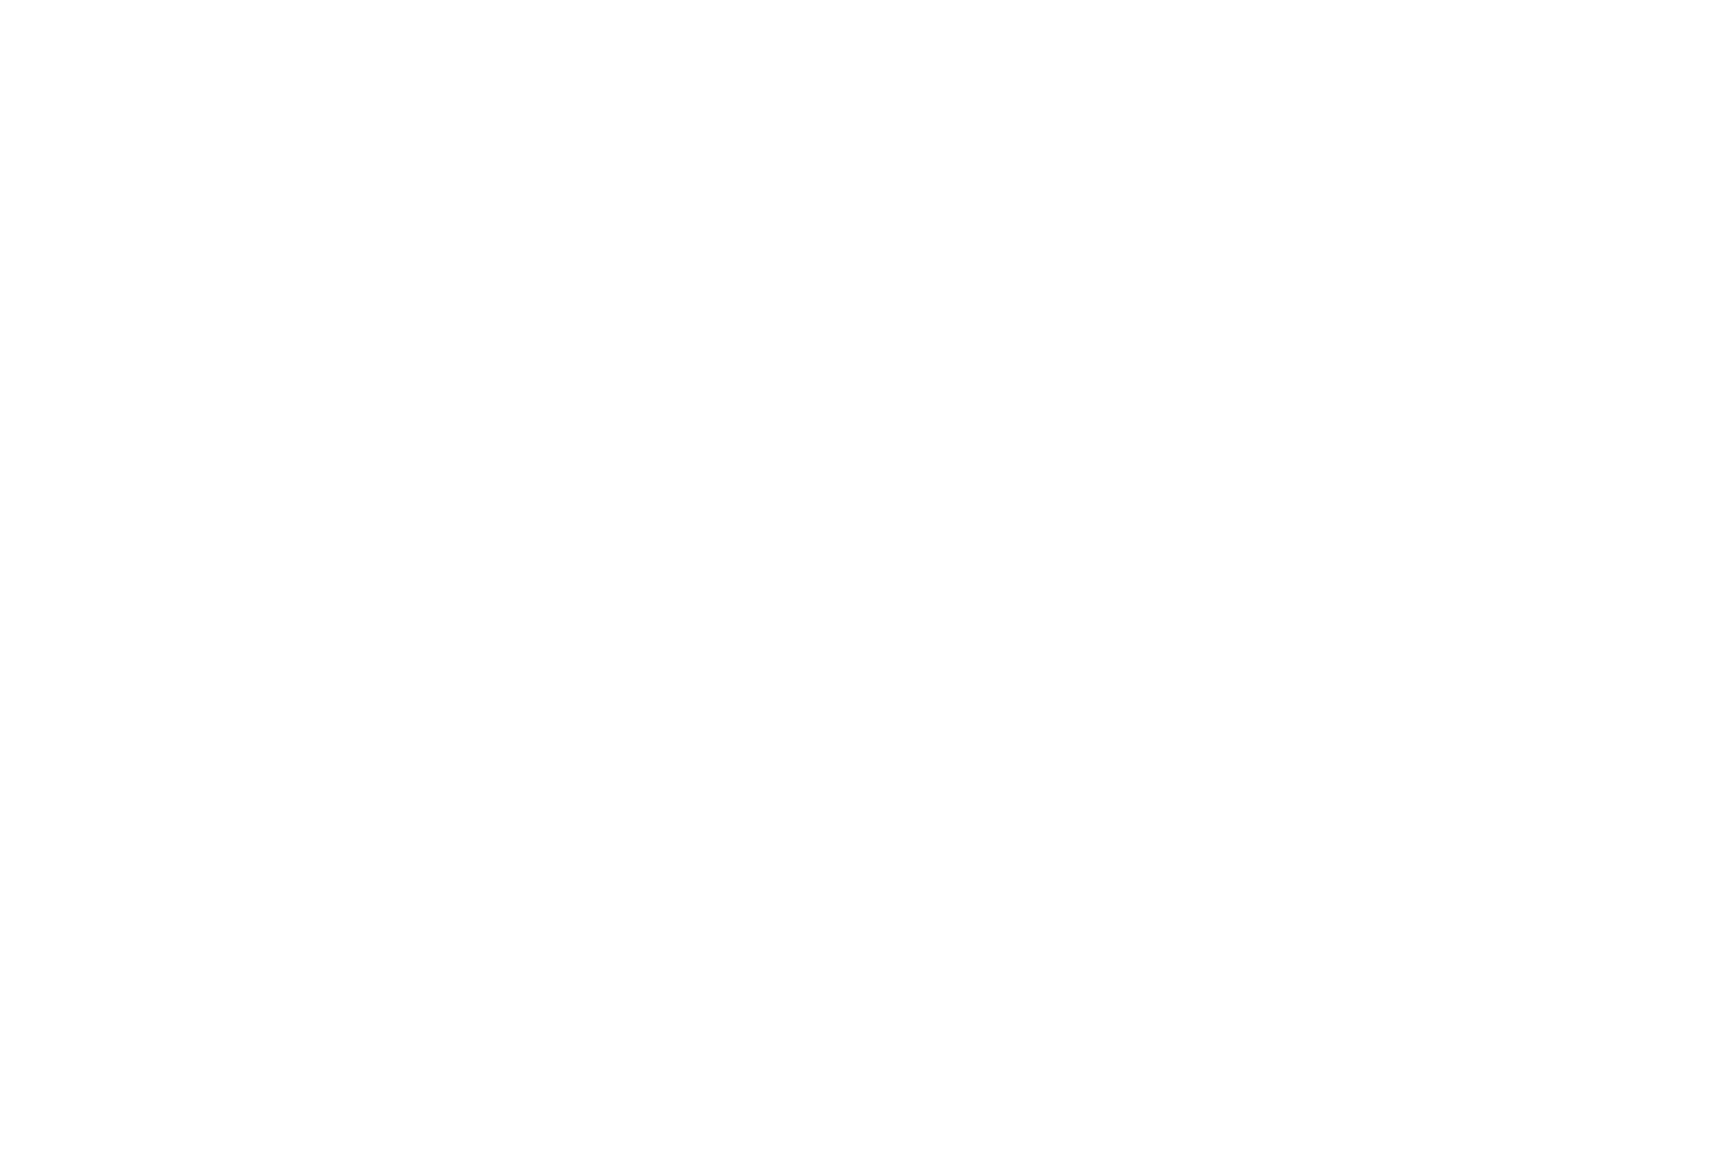 BEST SHORT MUSIC VIDEO - Shanghai Short Film Festival - 2022